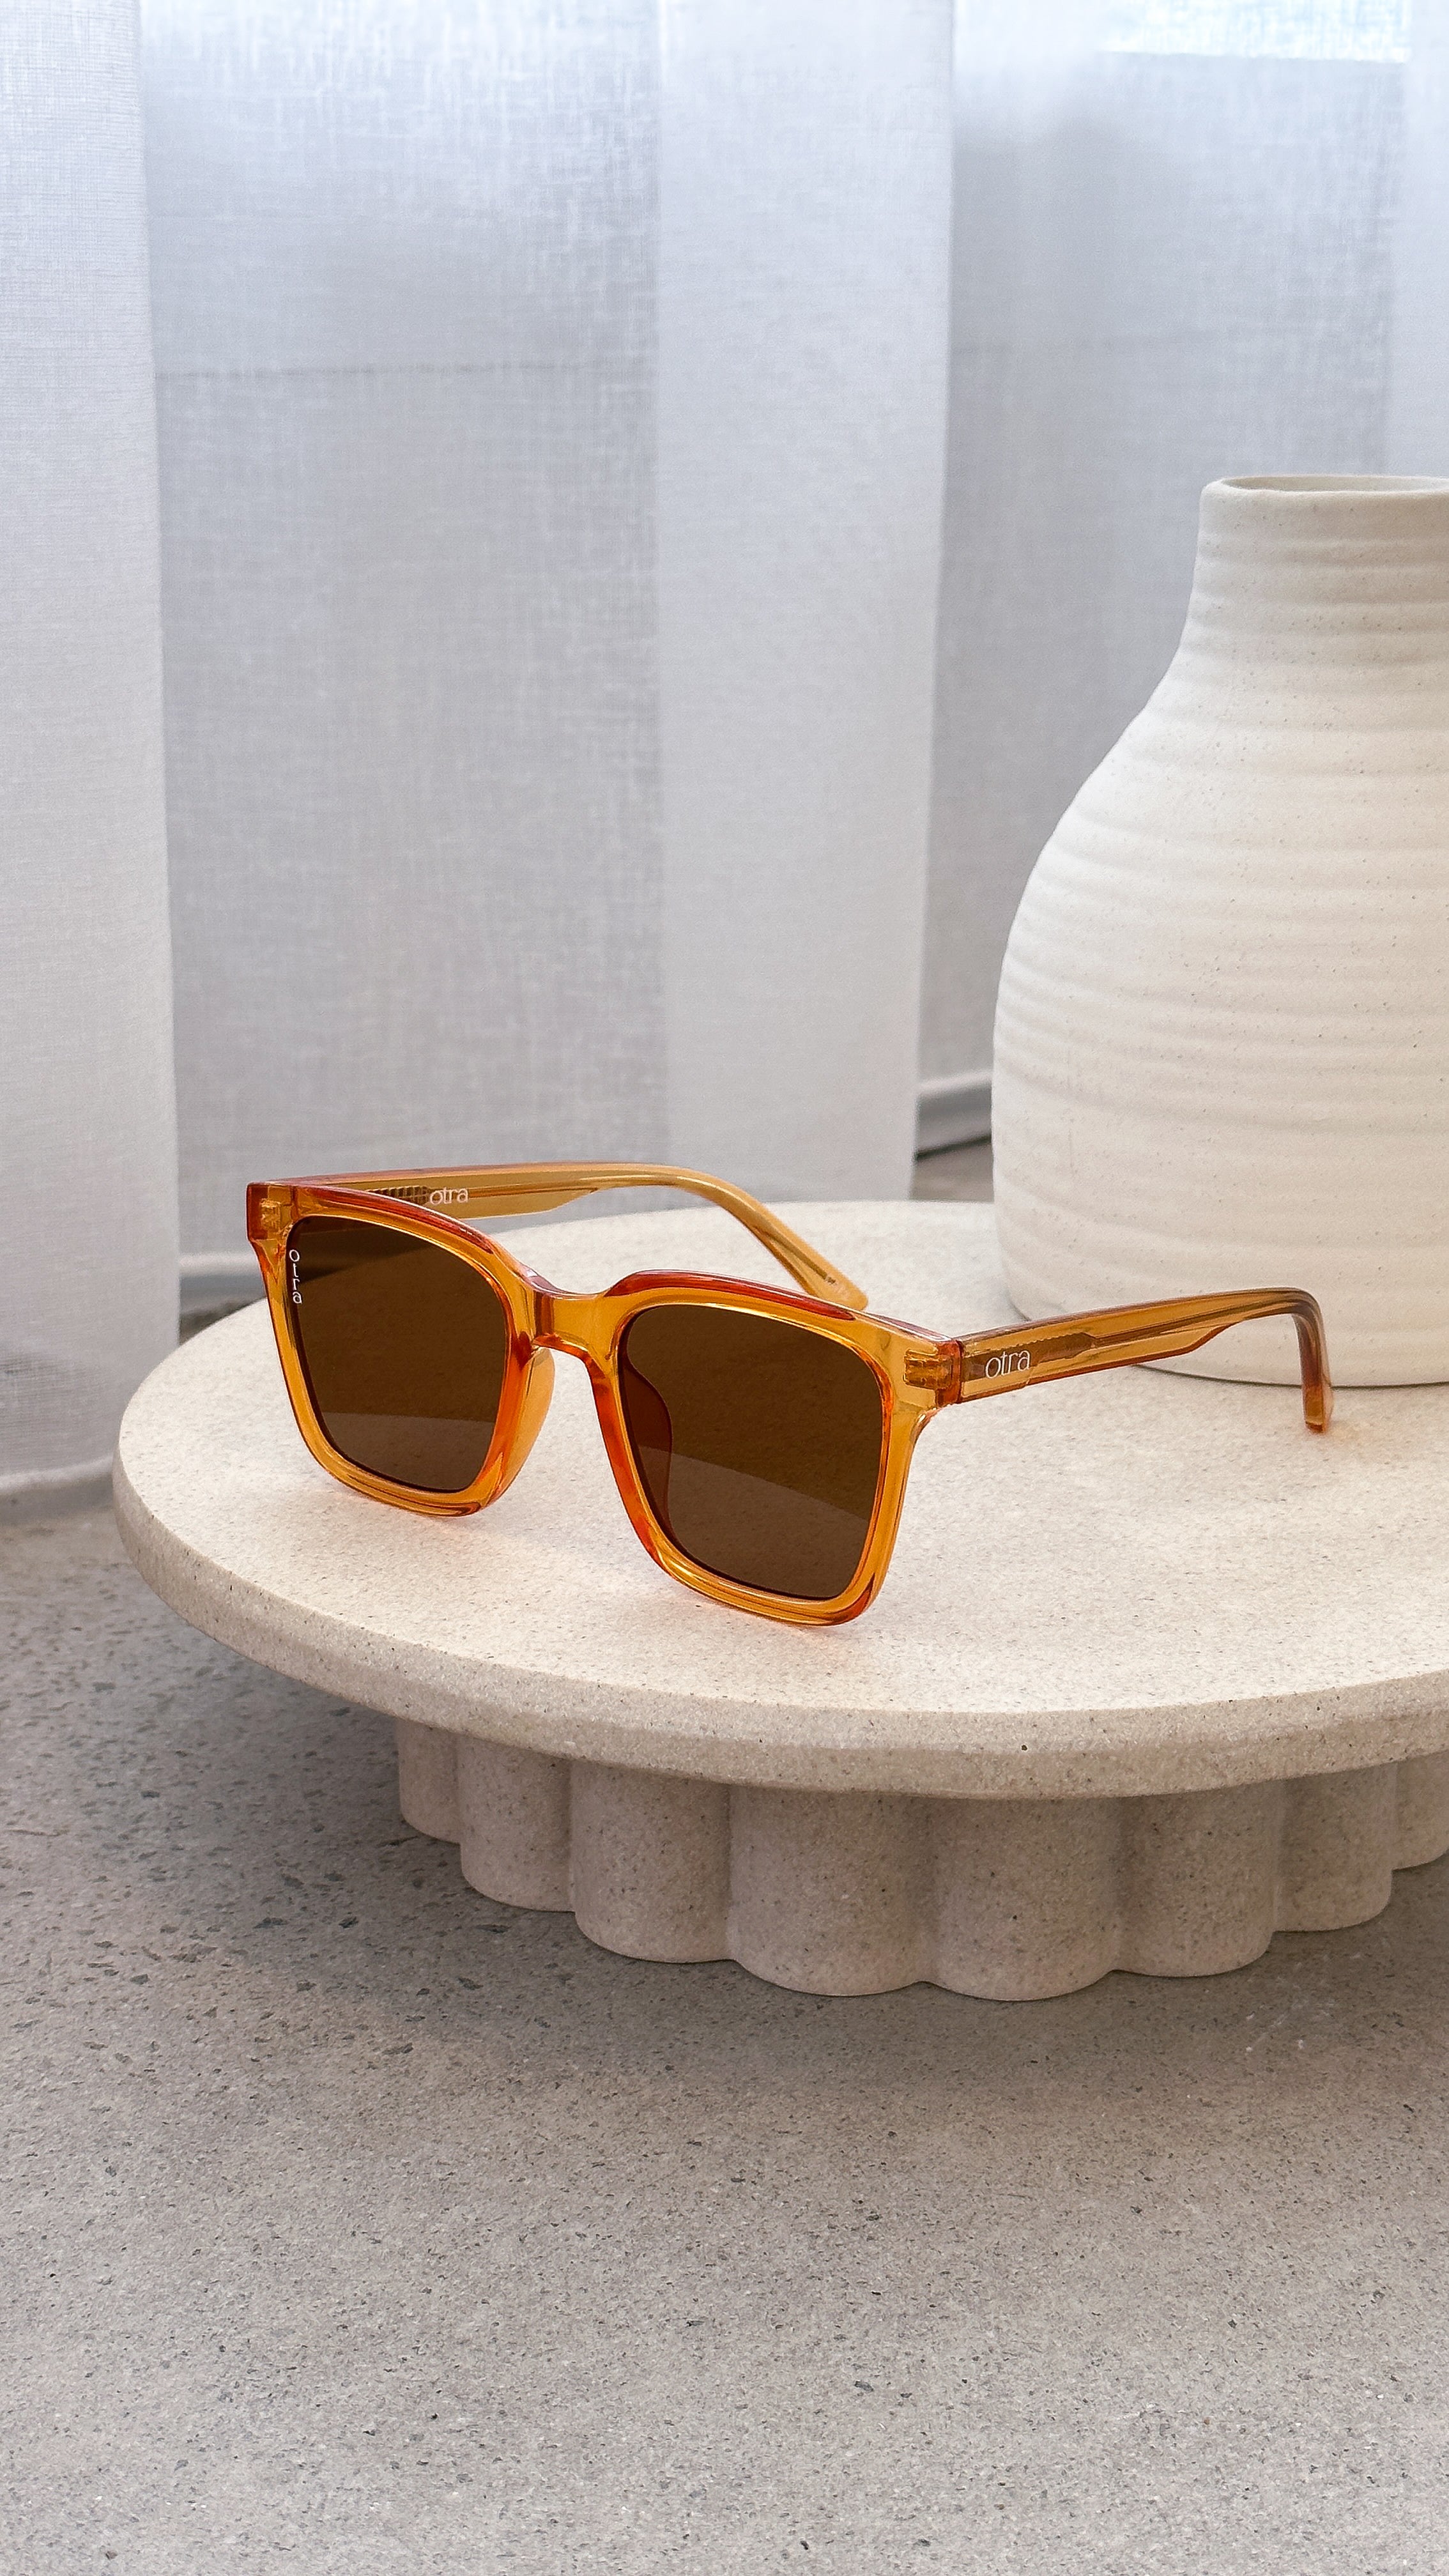 Fyn Sunglasses - Orange/Brown